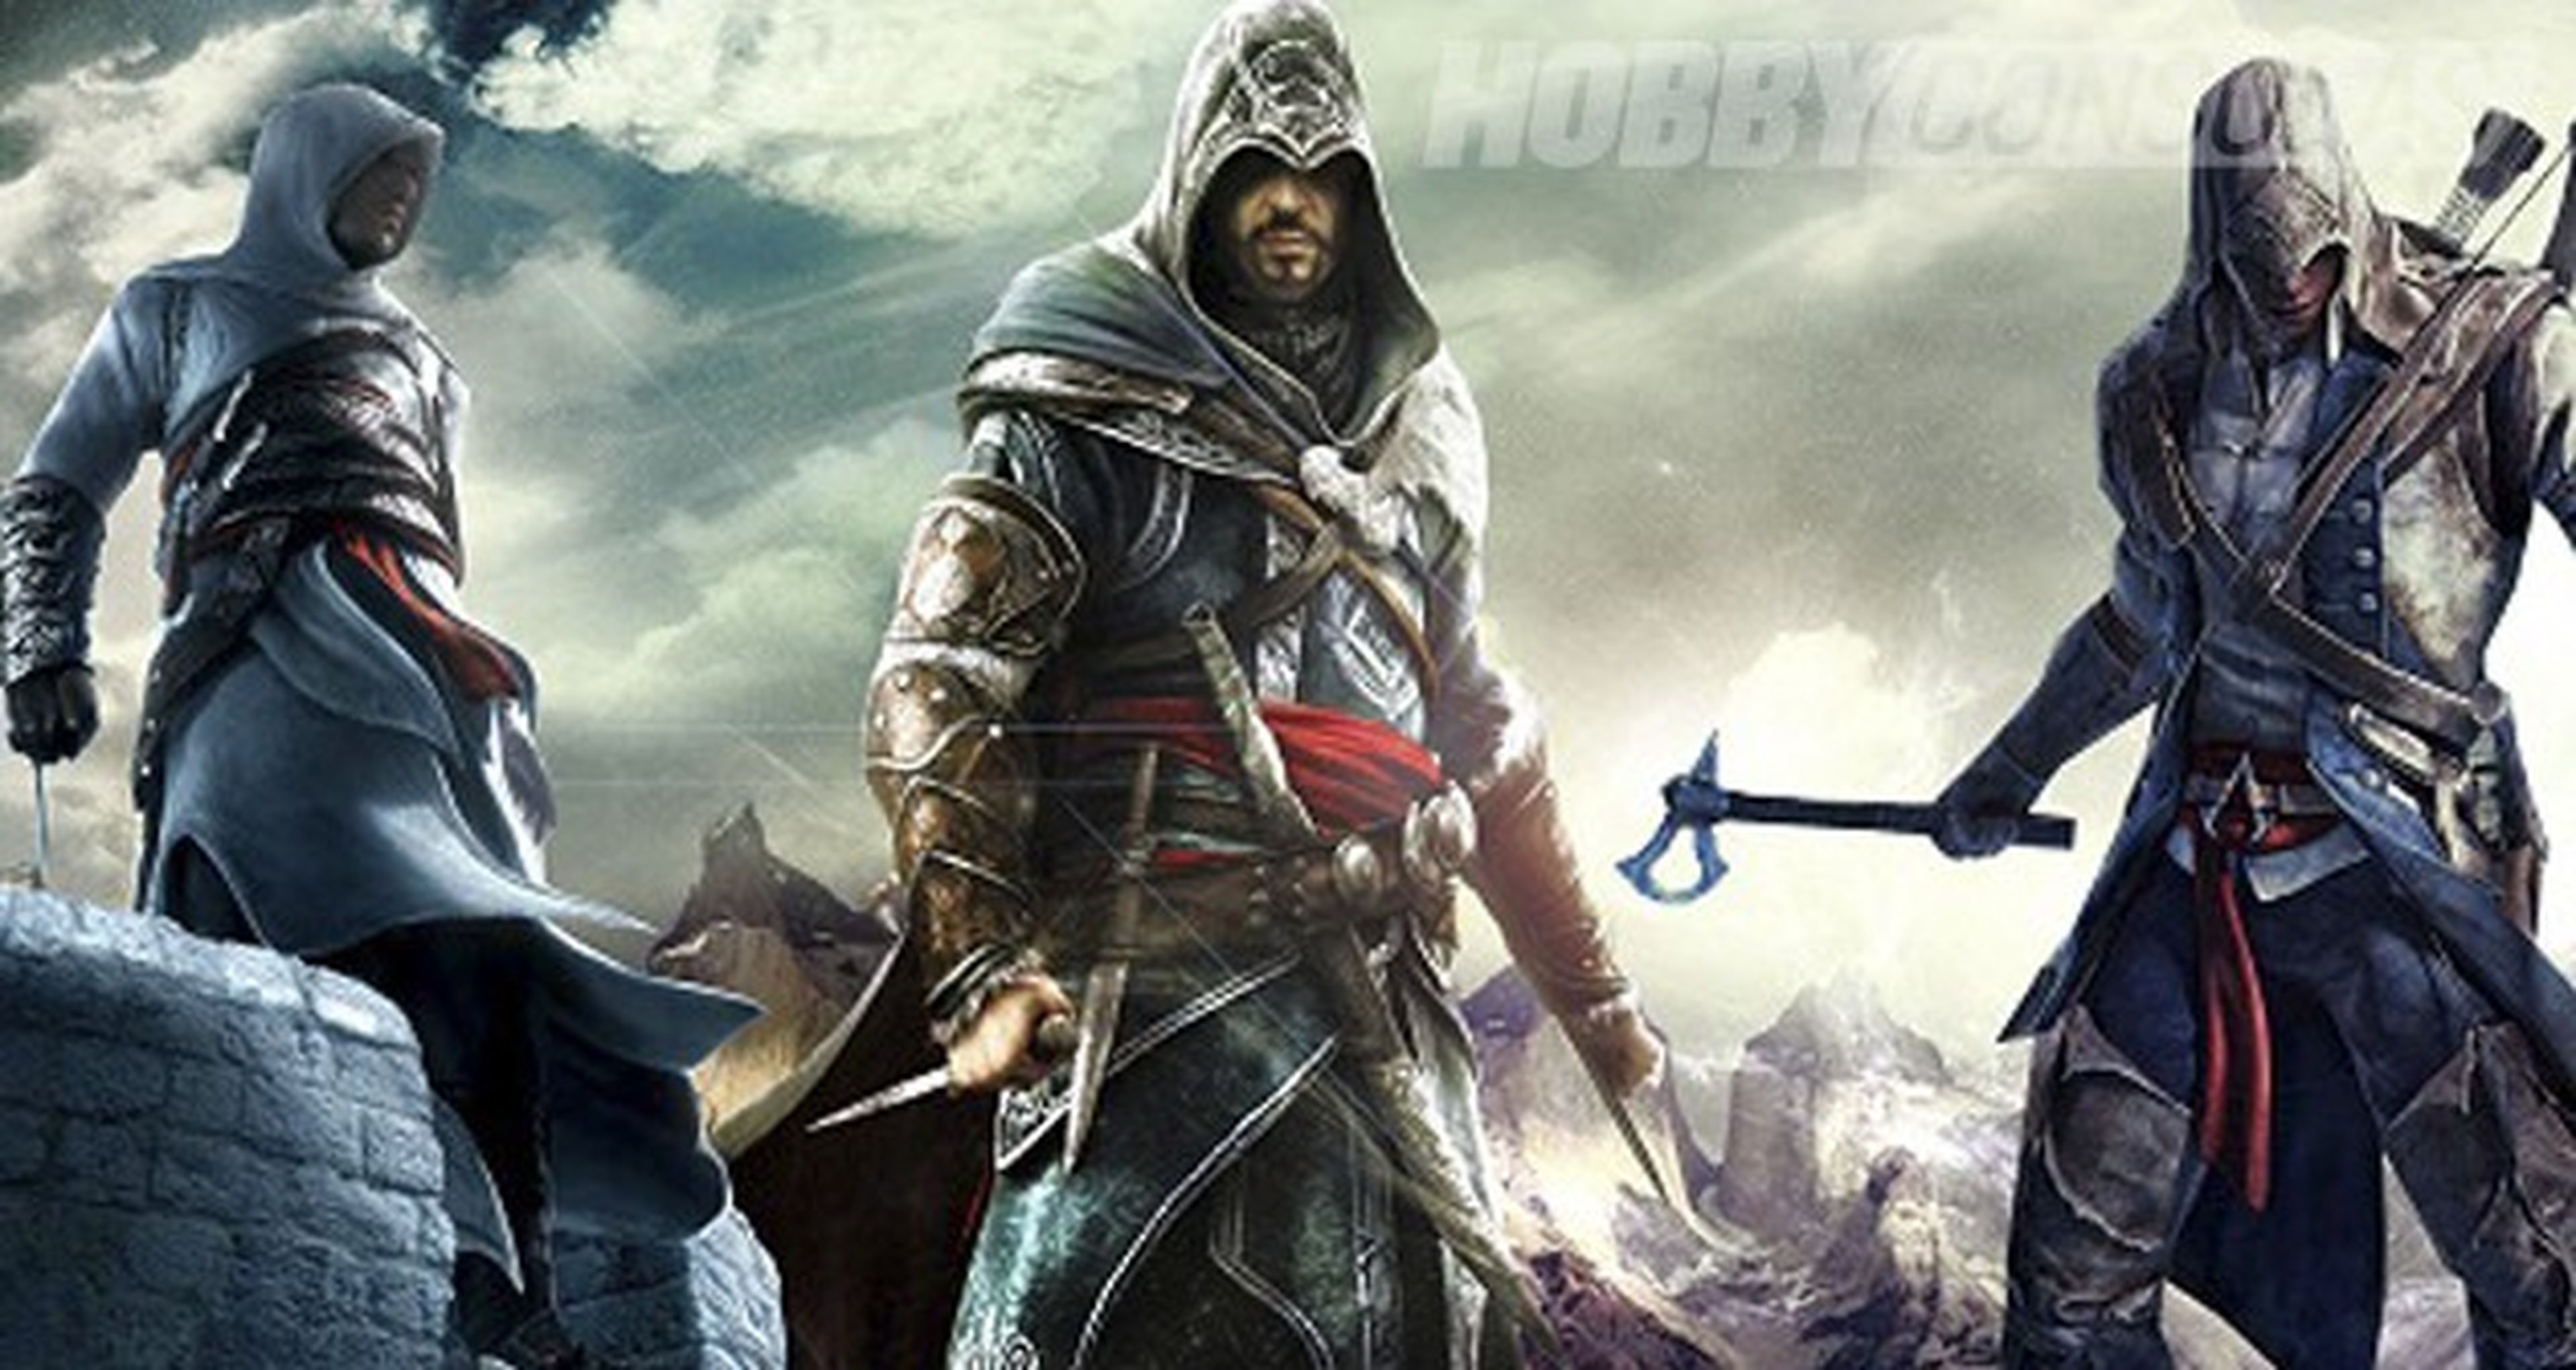 El final de la saga Assassin's Creed aún no está escrito